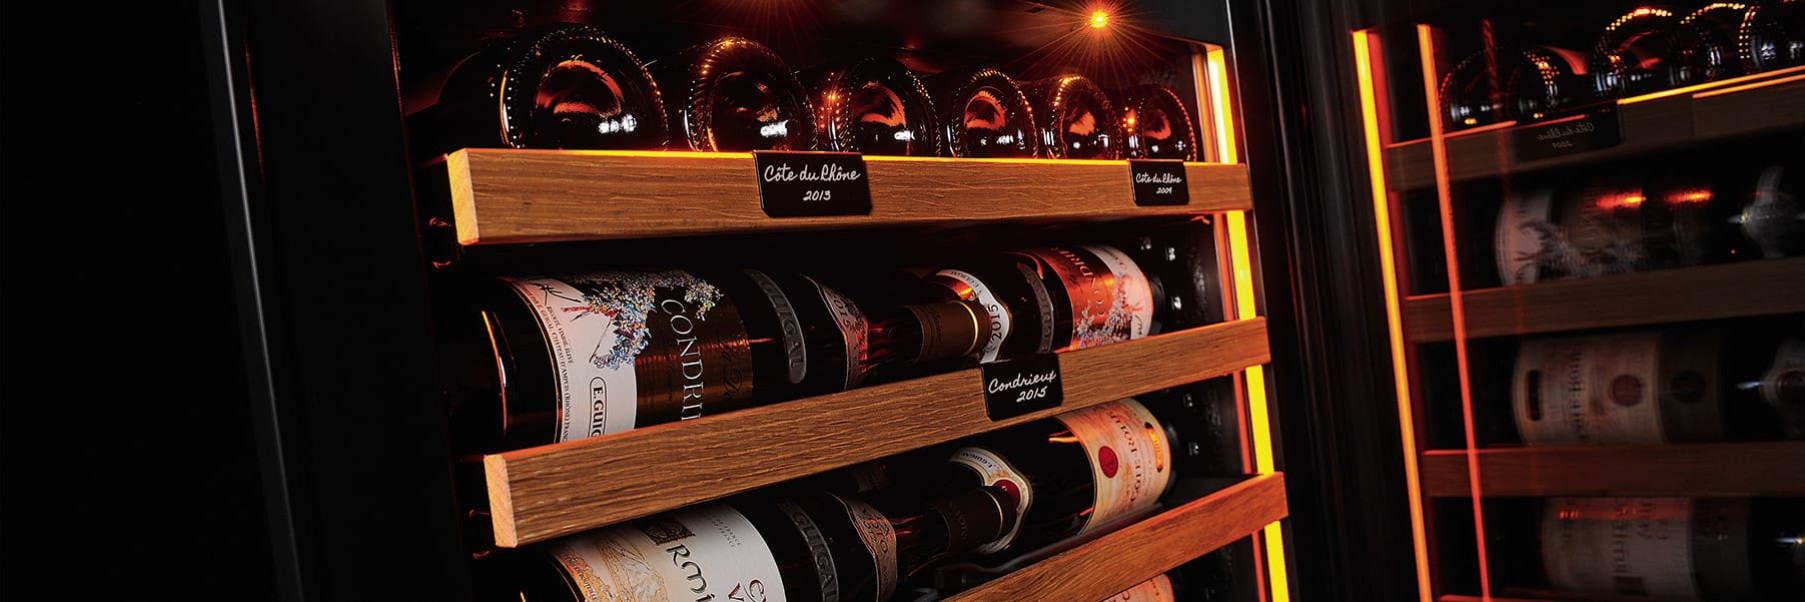 Une présentation soignée des bouteilles de vin grâce à l'éclairage intégré et des clayettes esthétiques qui permettent d'organiser les vins et mettre en avant les étiquettes.